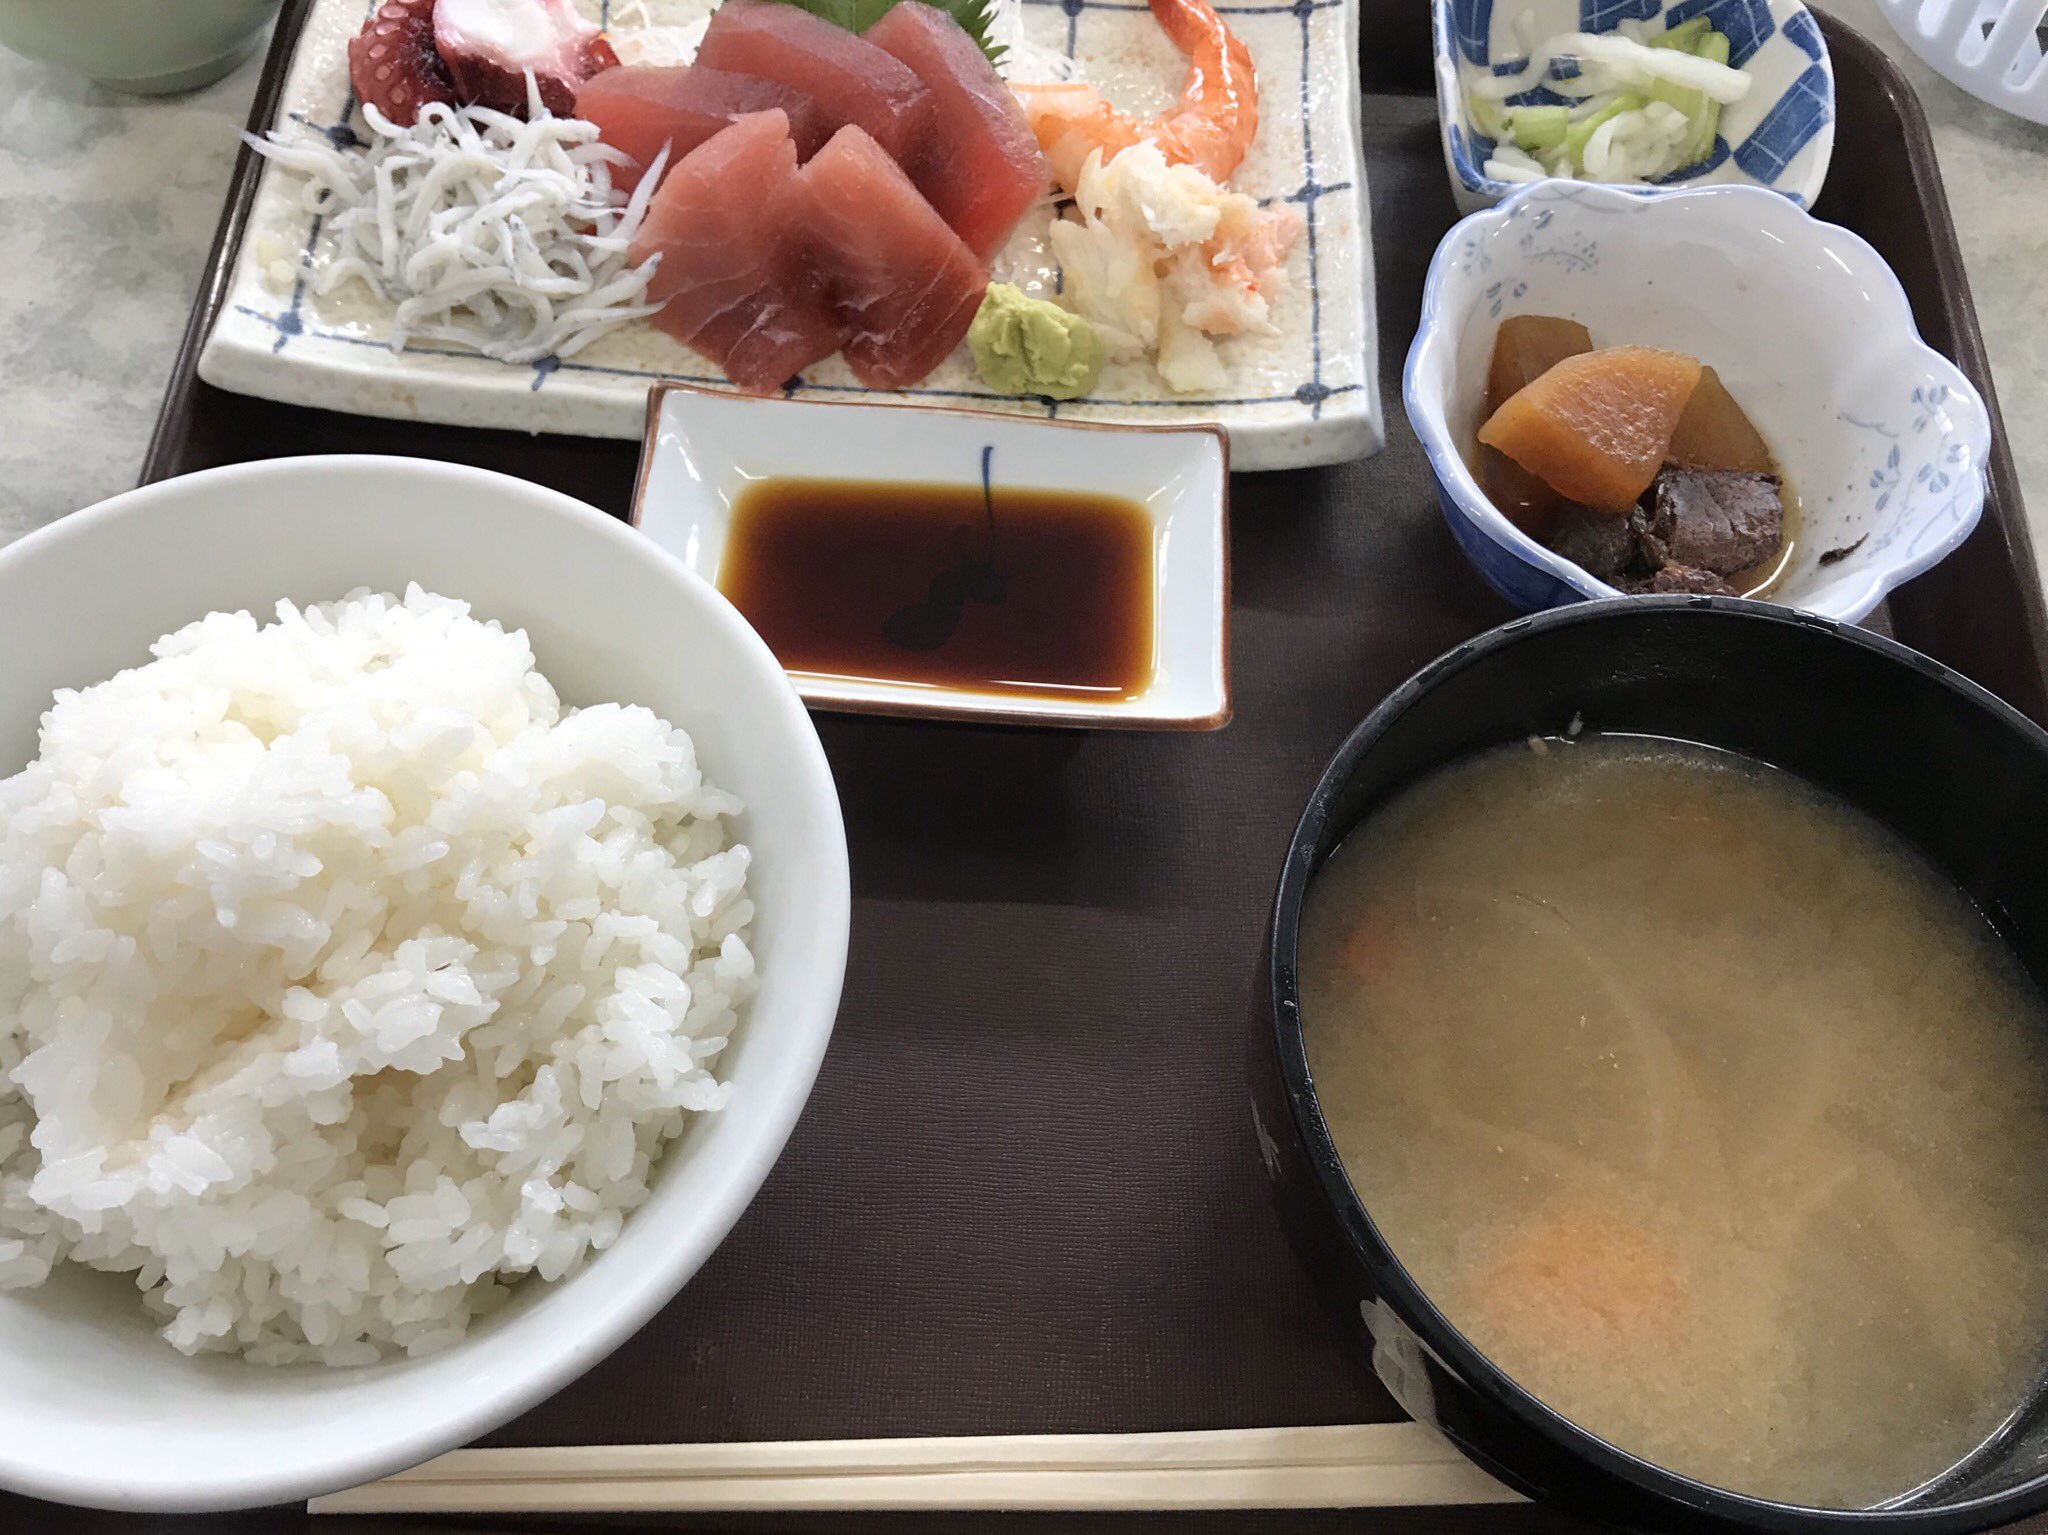 Hirotaka 先週月曜日のおランチは横浜南部市場食堂の鈴にて刺身定食を マグロが美味いし汁が豚汁なのが嬉しい 他の食堂も非常に気になる ご馳走様でした T Co Mkk2lqcaxf Twitter